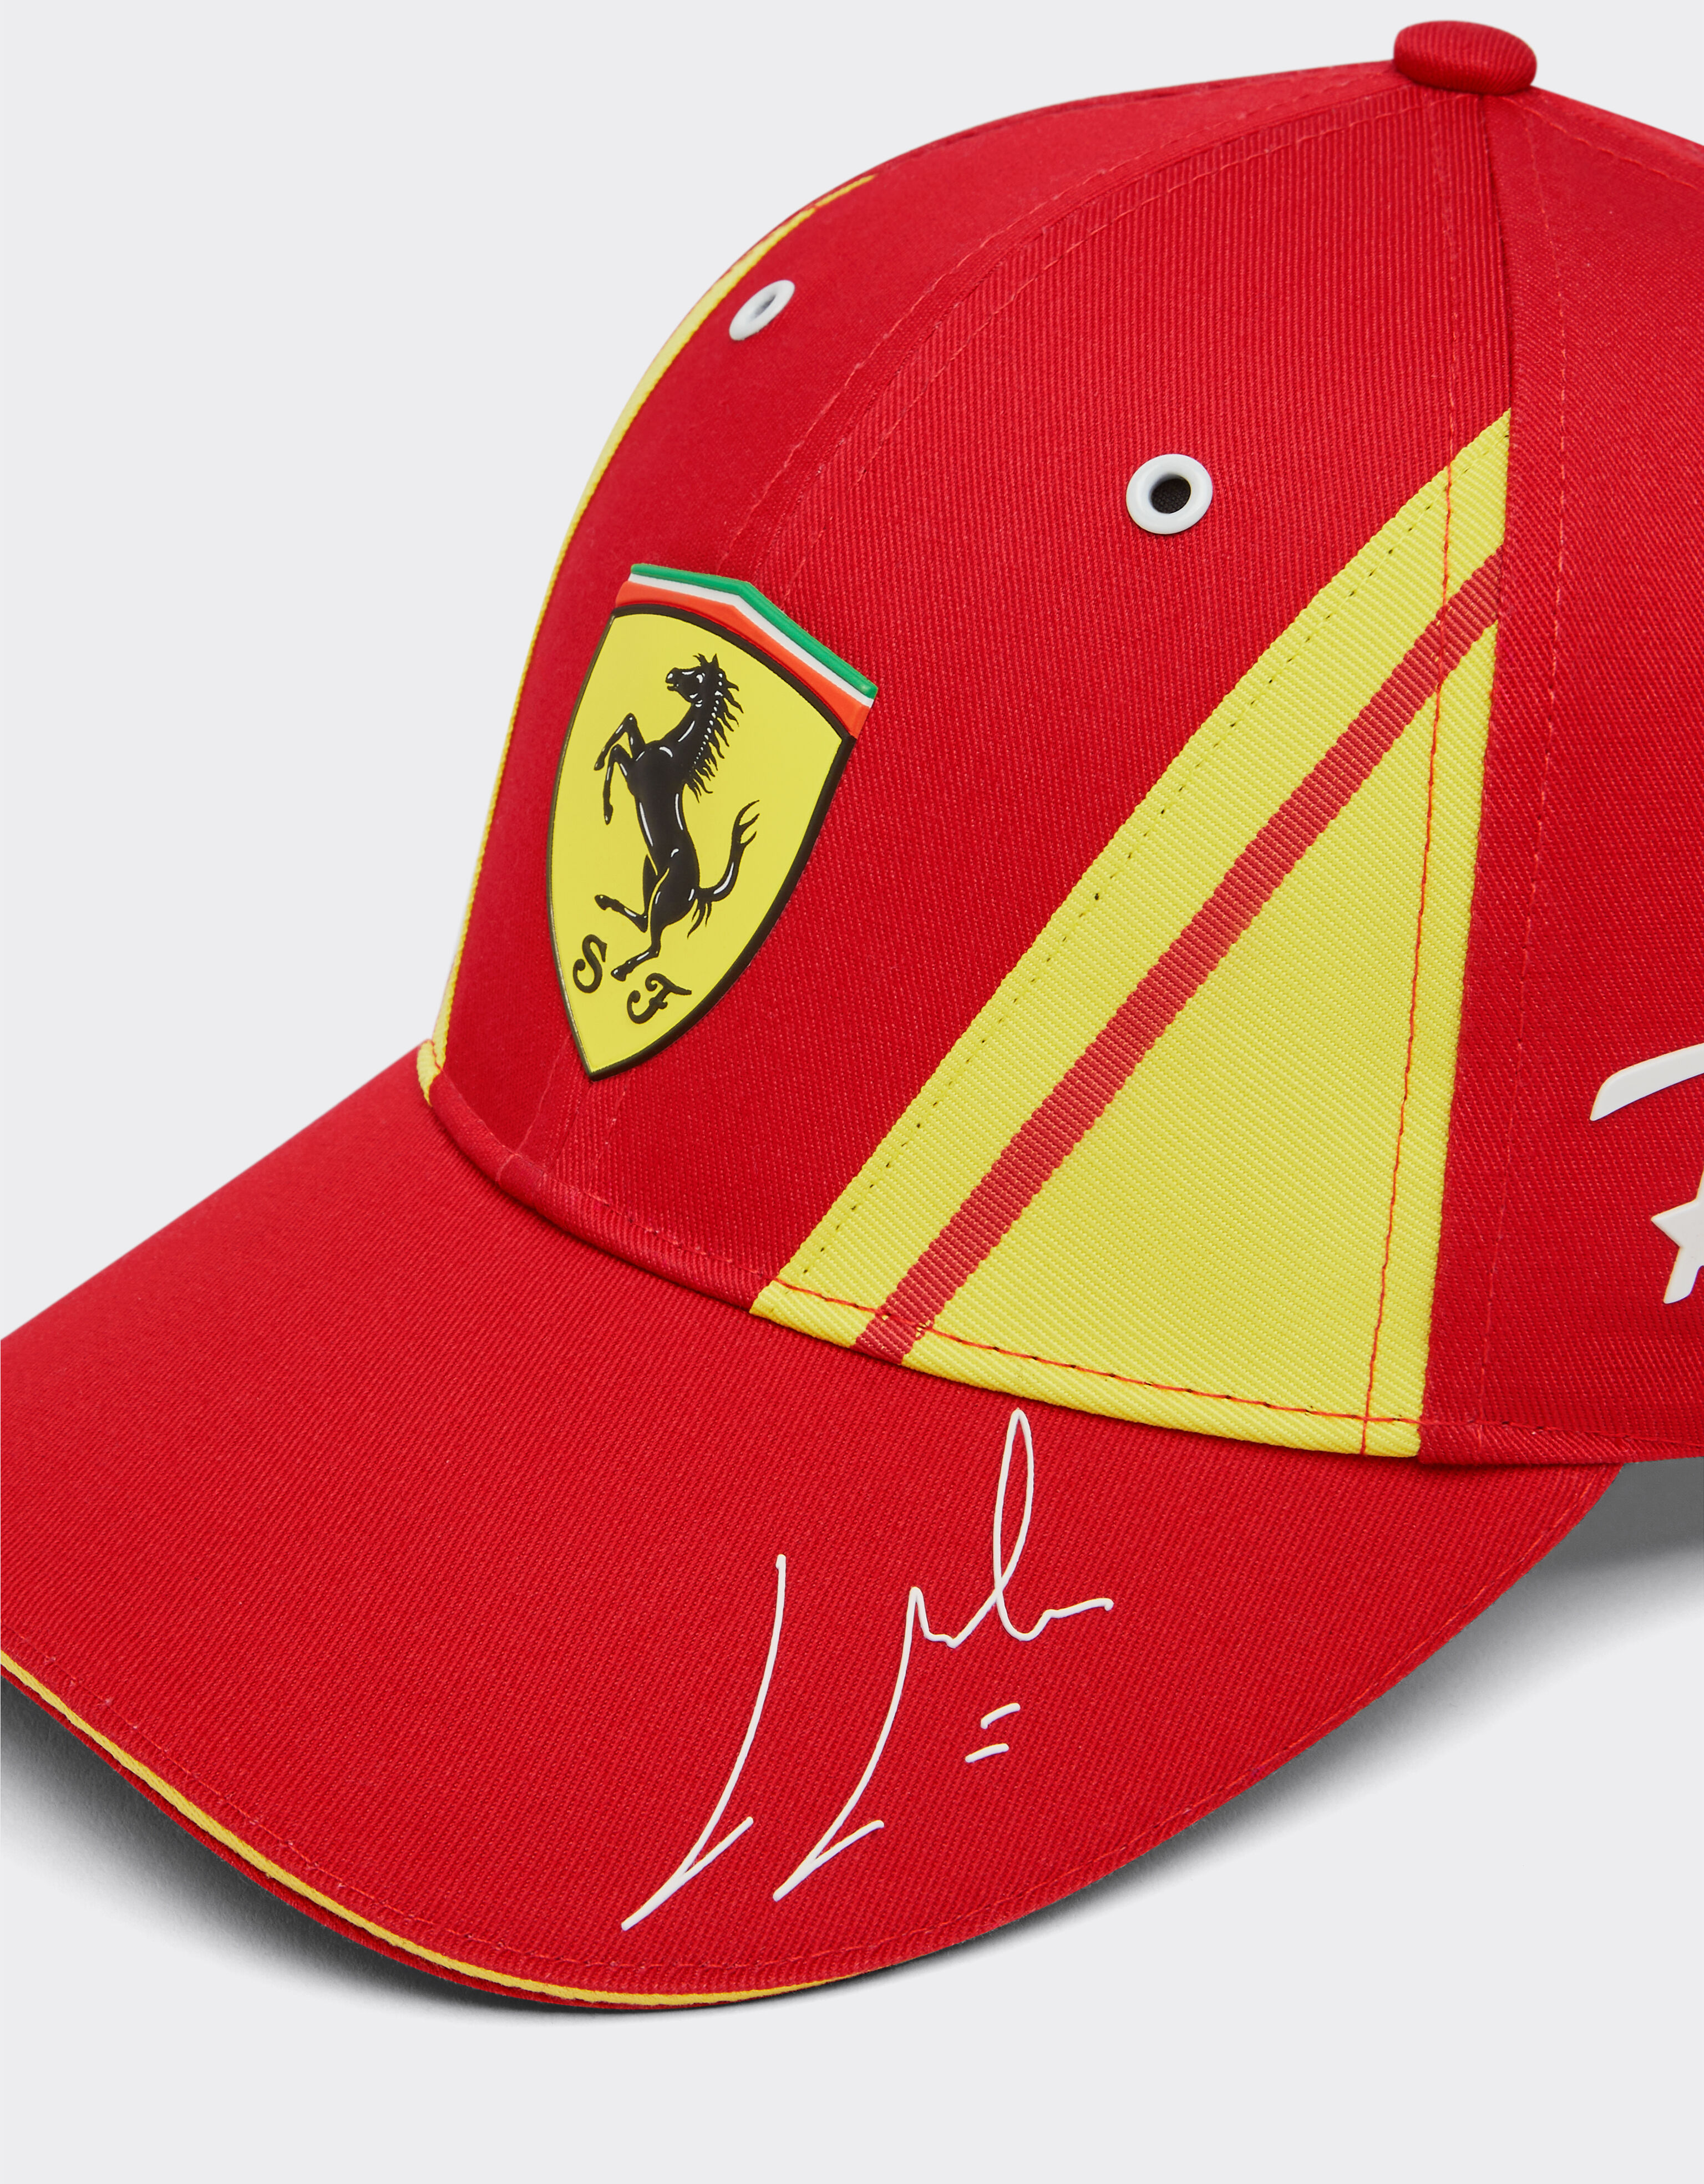 Ferrari Cappellino Molina Ferrari Hypercar - Edizione limitata Rosso F1323f